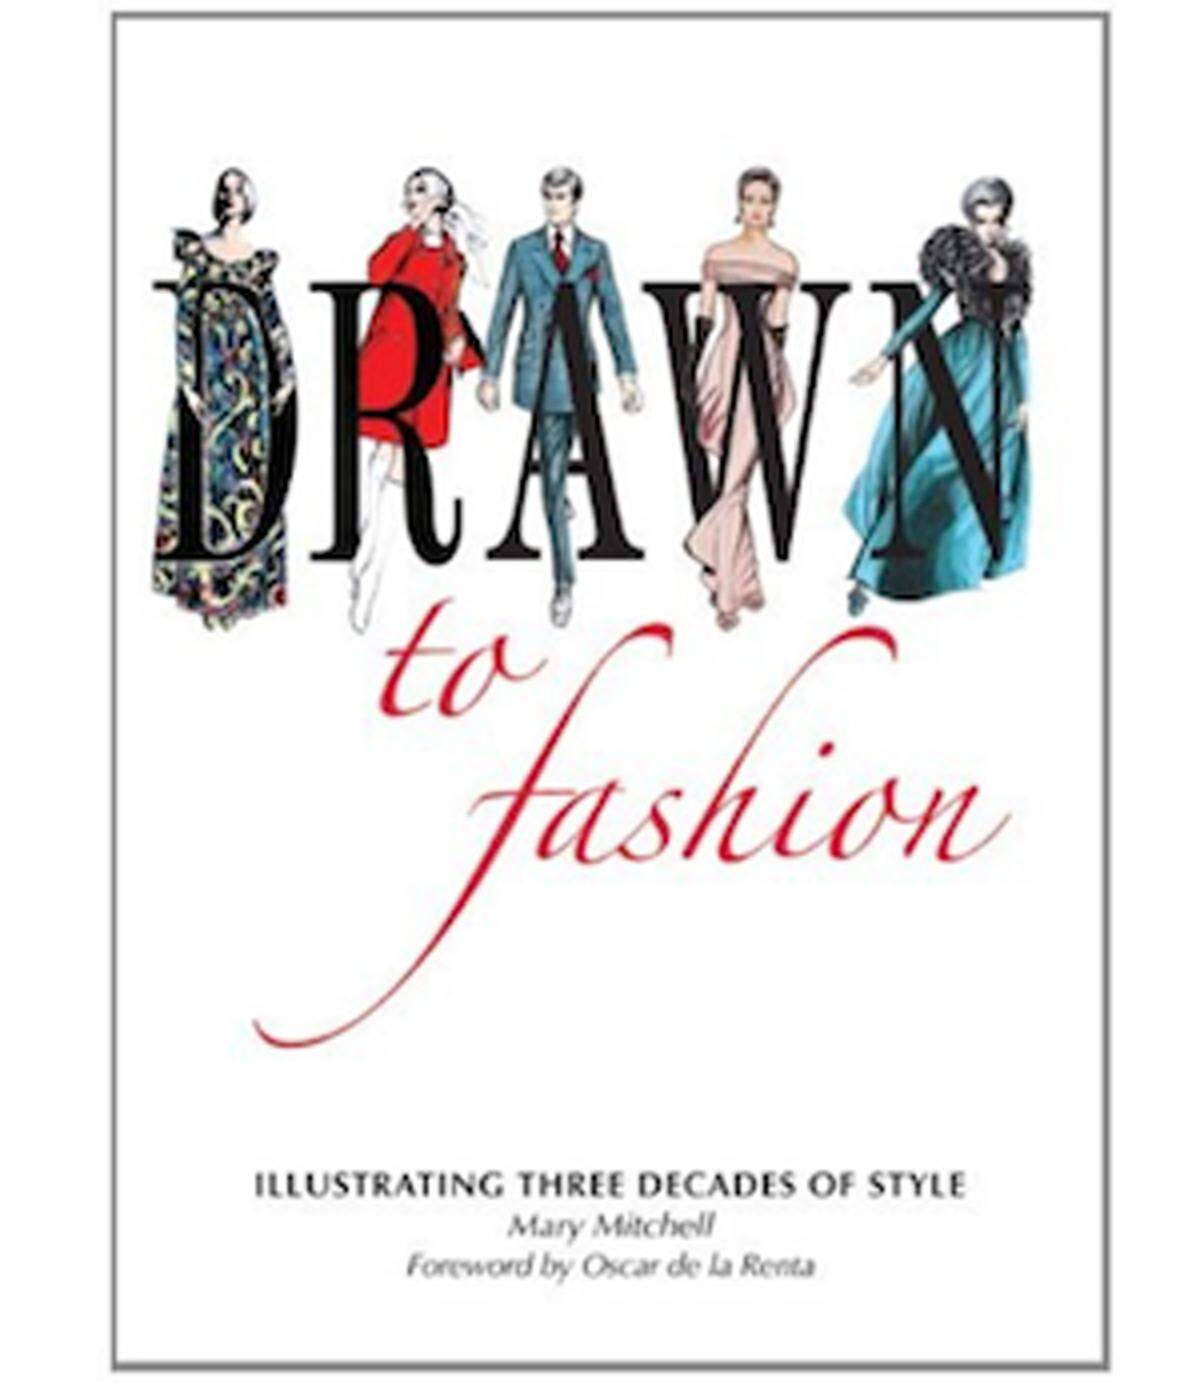 Die Erlöse des Katalogs kommen dem "Mary Mitchell Fashion Illustration Scholarship Fund" zu Gute.